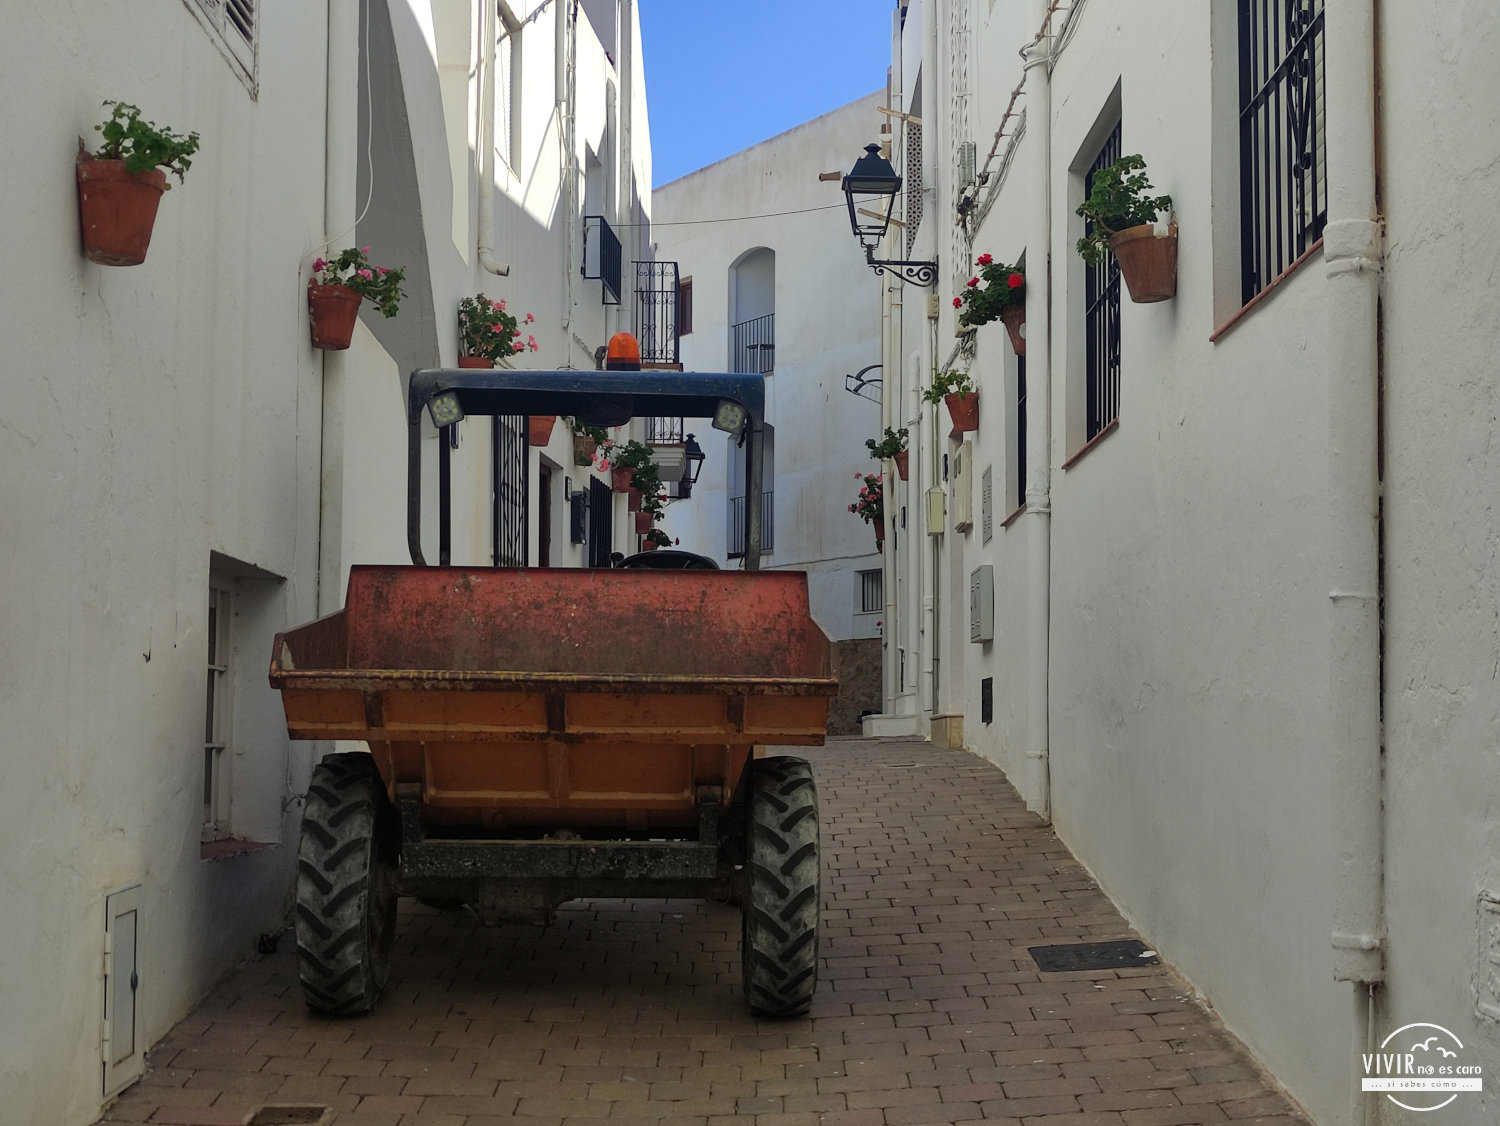 Calles blancas de Mojácar pueblo (Almería)